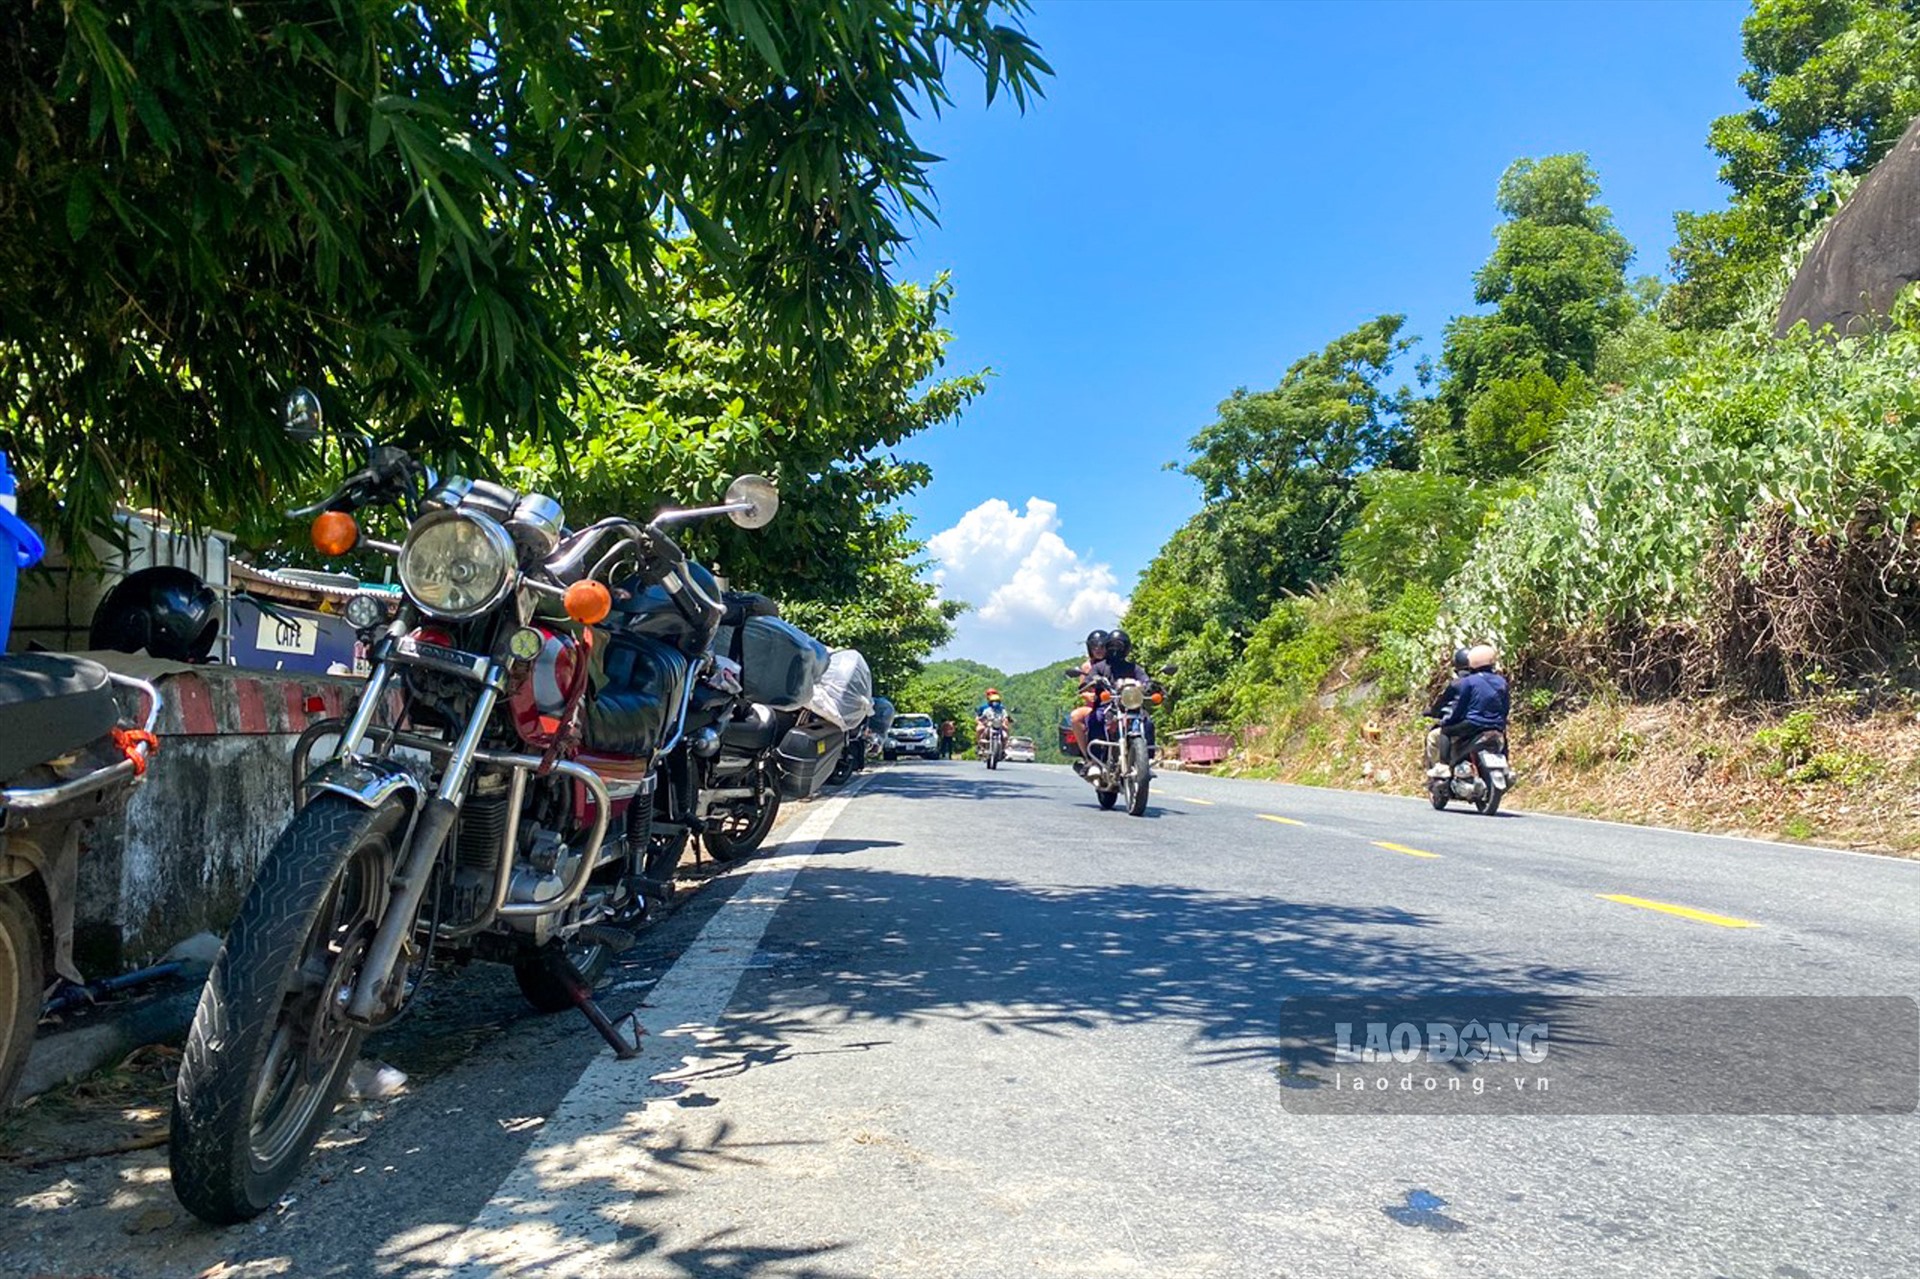 “Đường đèo nhỏ, ô tô đỗ dưới lòng đường nên mỗi khi di chuyển qua khu vực này chúng tôi phải lấn qua làn đường bên kia“, anh Trần Công Đạo - lái xe trú tại tỉnh Thừa Thiên Huế cho biết.